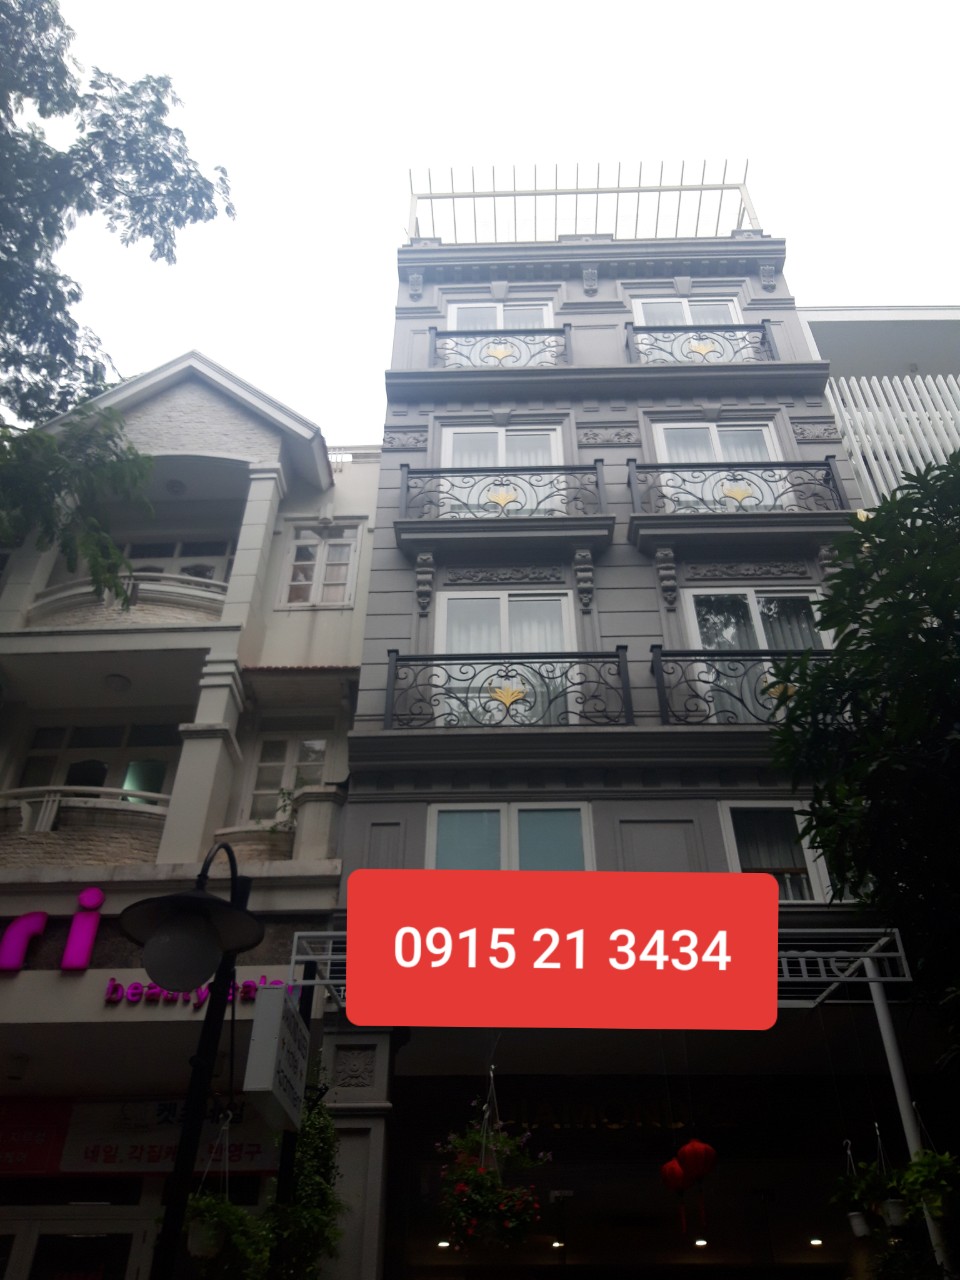 Cần cho thuê khách sạn Phú Mỹ Hưng, Q7  16 phòng mới xây đang cho nội thất vào mới 100%  LH: 0915 21 3434.